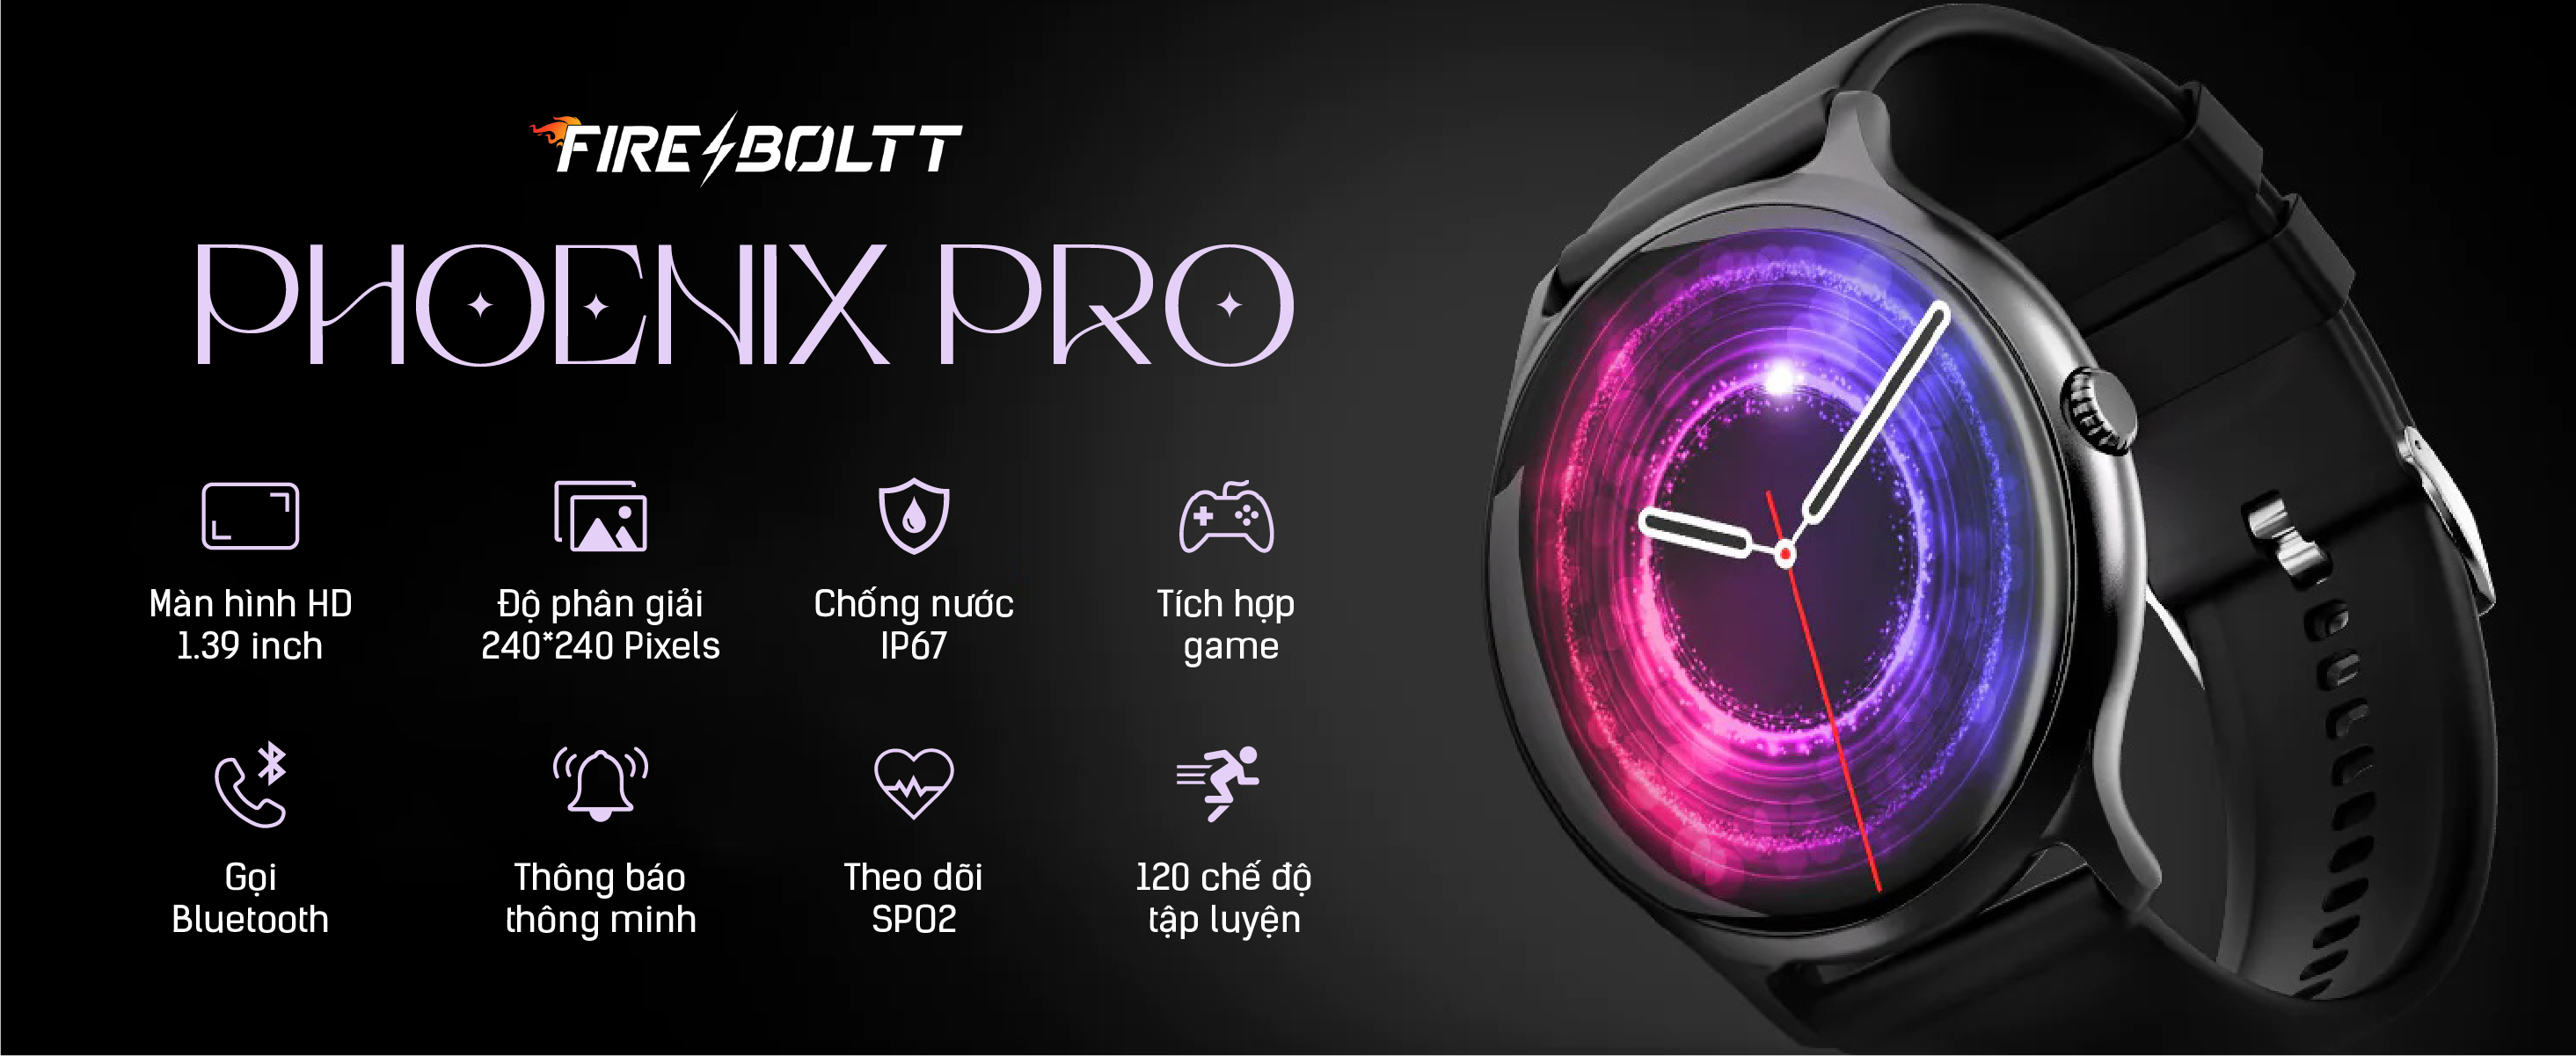 Đồng hồ thông minh FireBoltt Phoenix Pro Cao Cấp